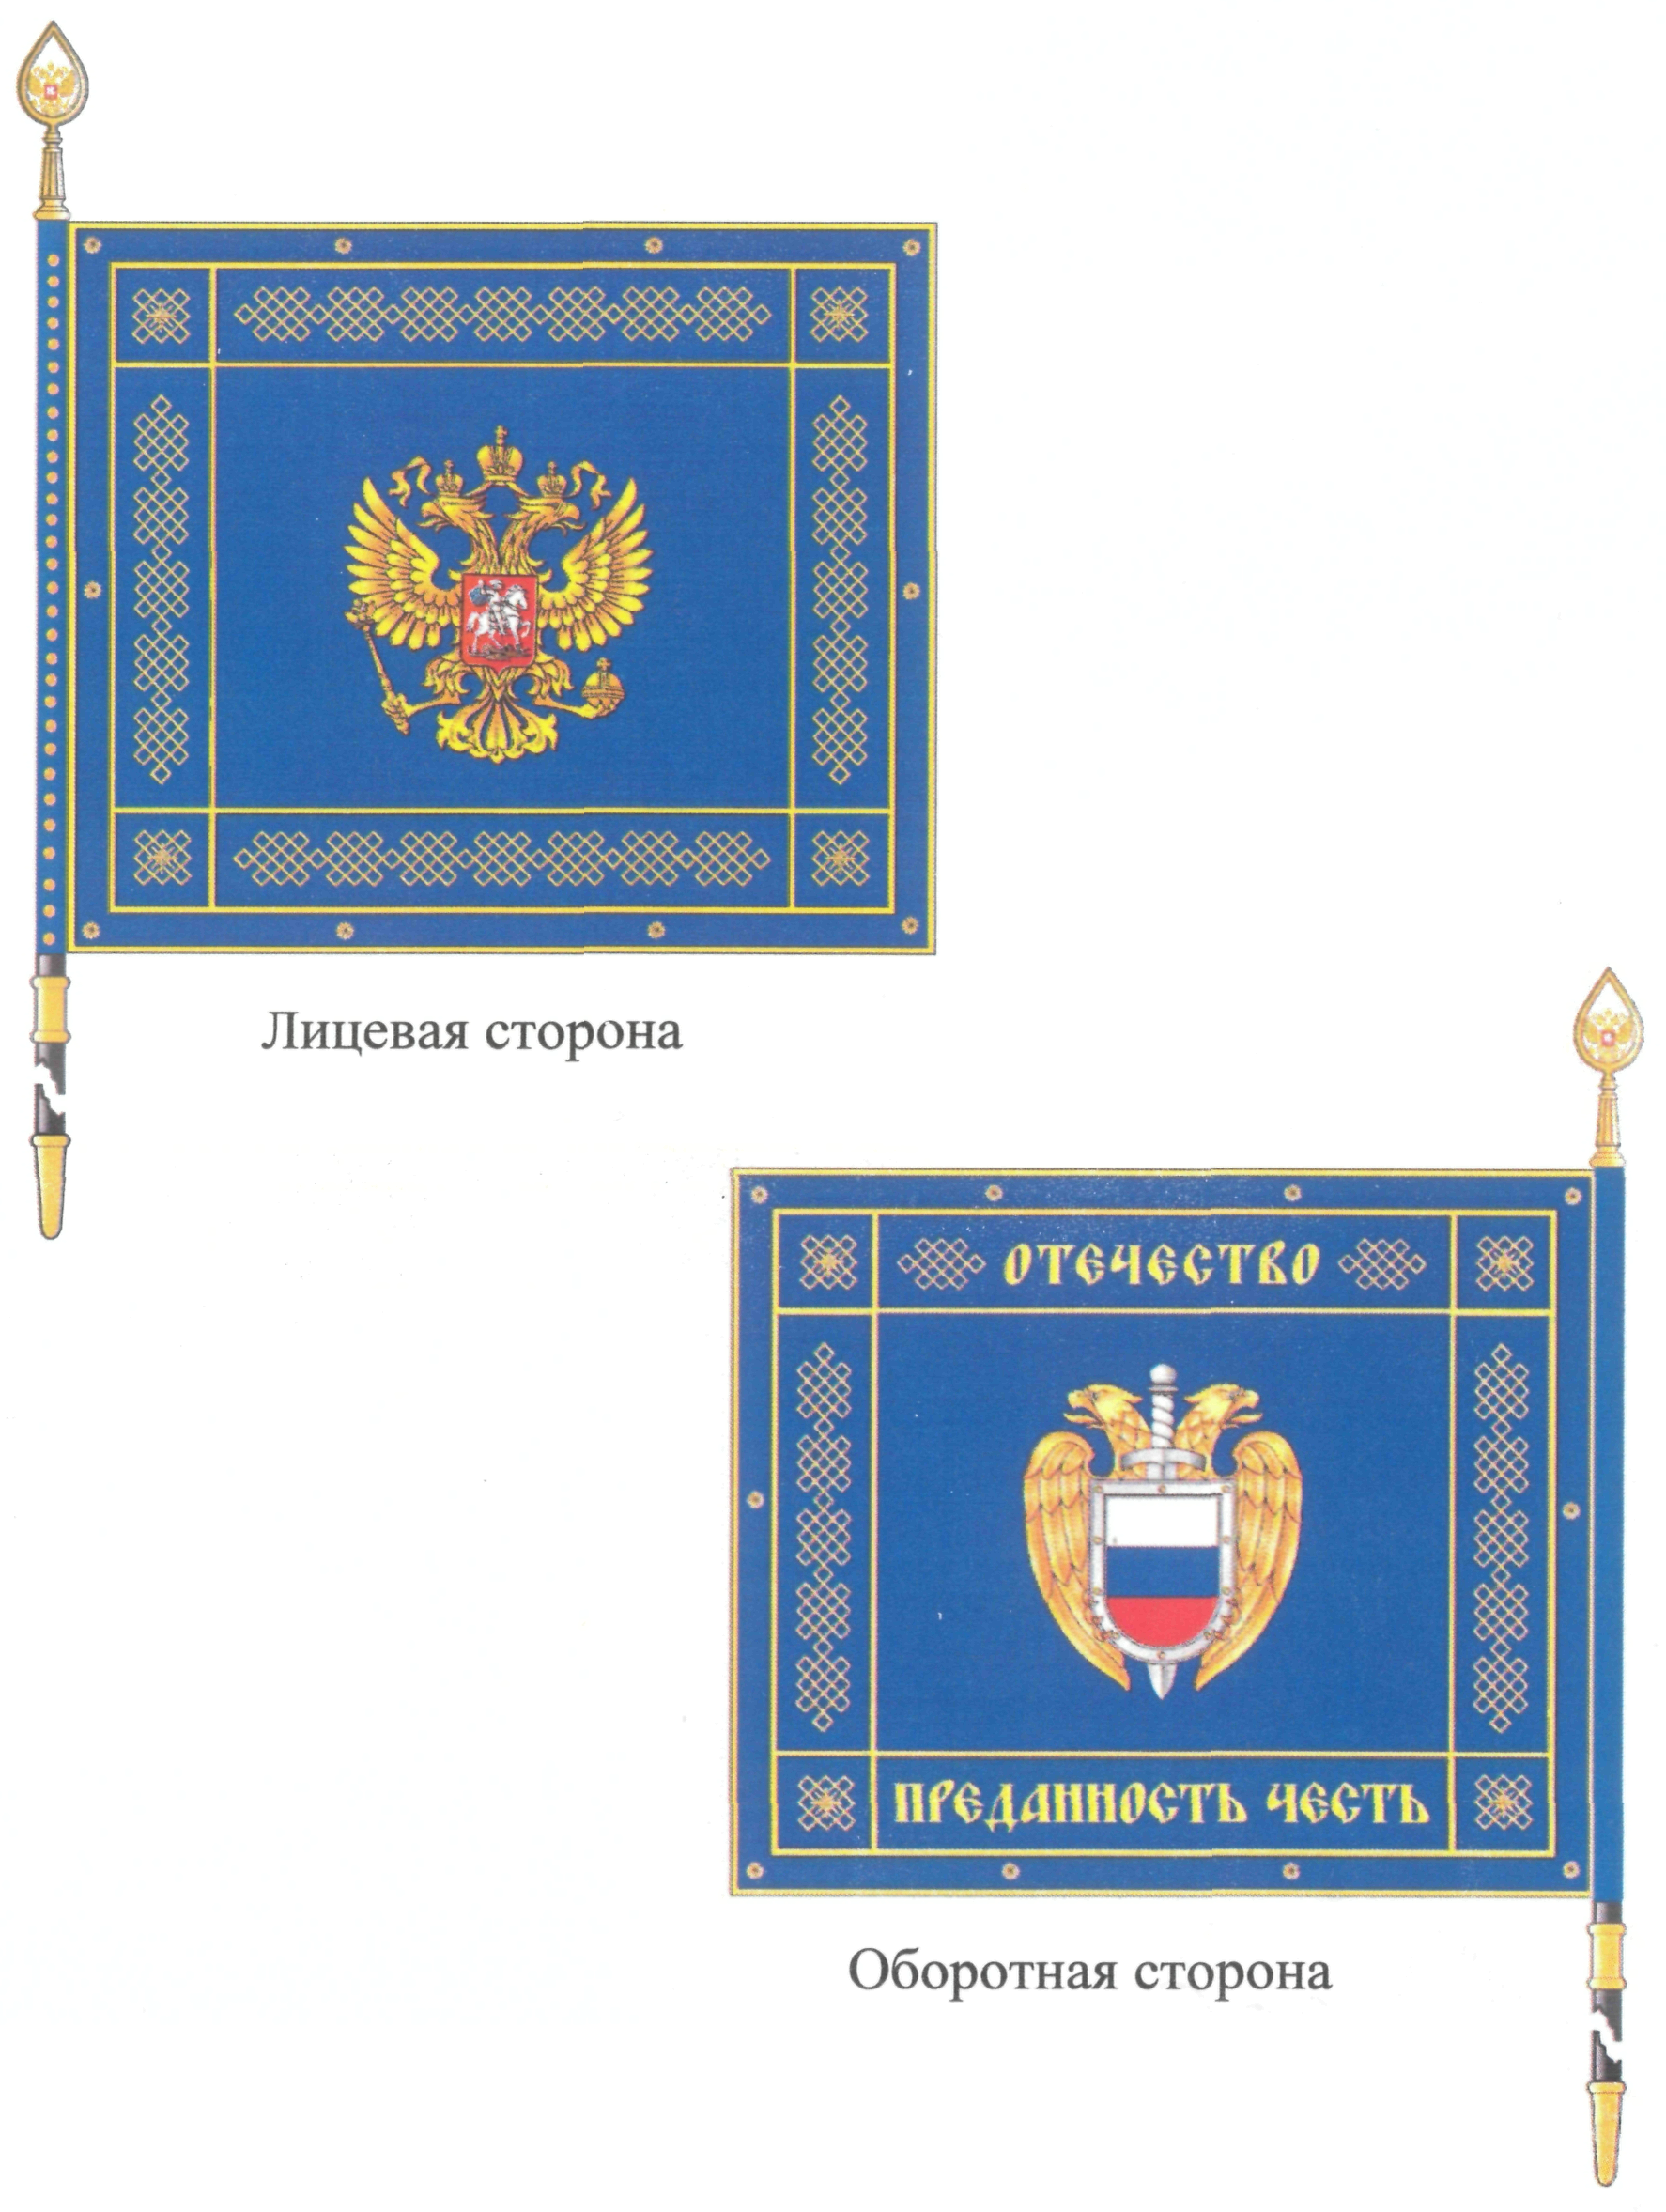 Знамя Федеральной службы охраны Российской Федерации